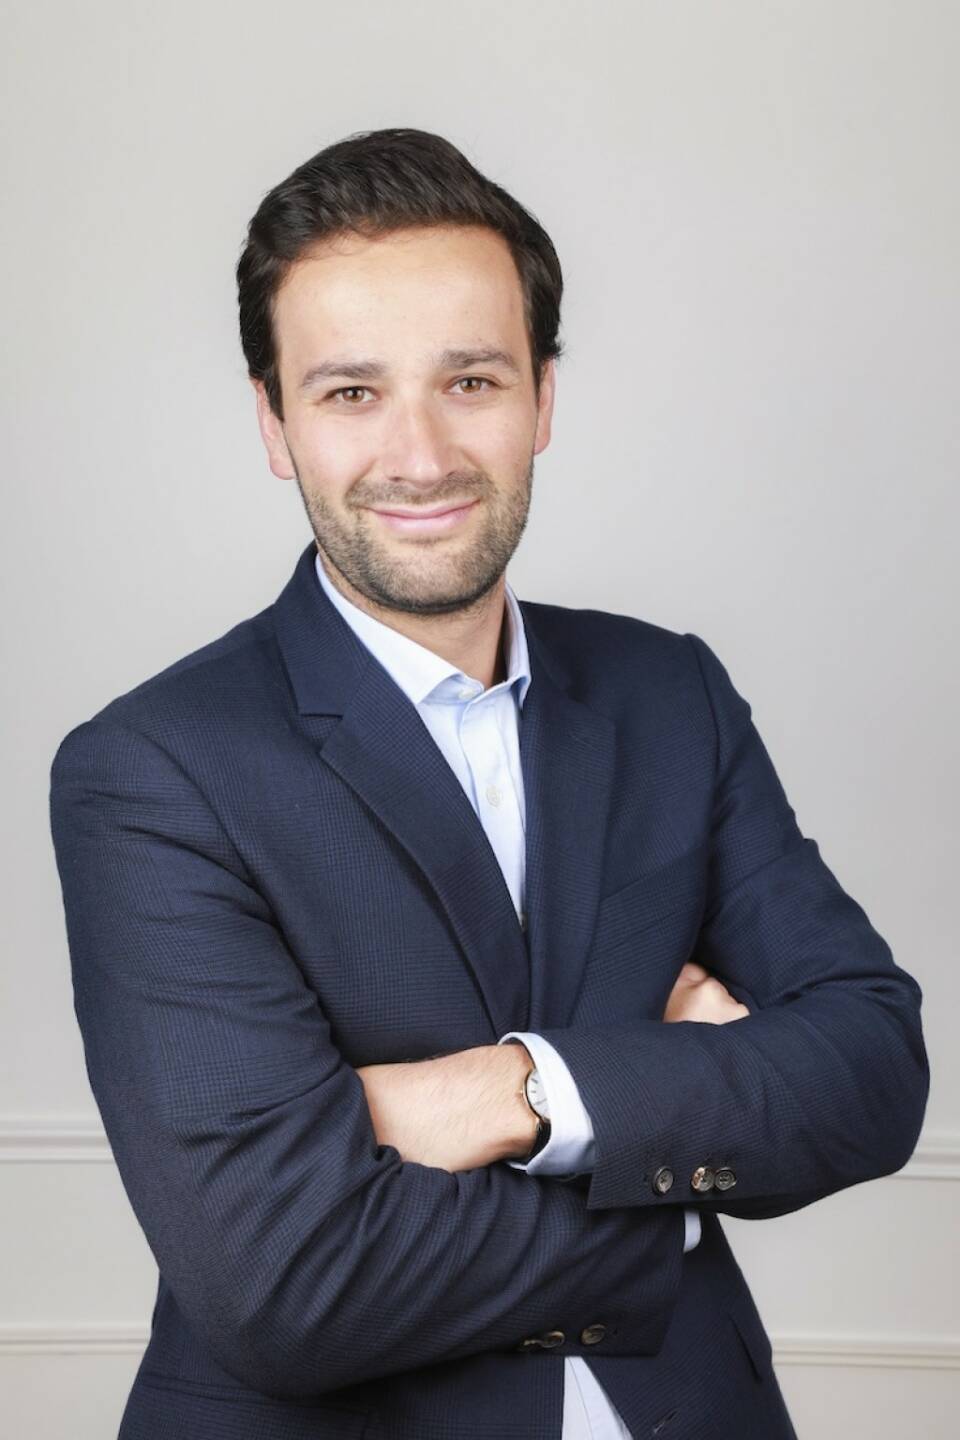 Aviva Investors, die global tätige Asset-Management-Gesellschaft des britischen Versicherers Aviva plc, hat Grégoire Bailly-Salins als neuen Head of Transactions für Kontinentaleuropa eingestellt. Credit: Aviva